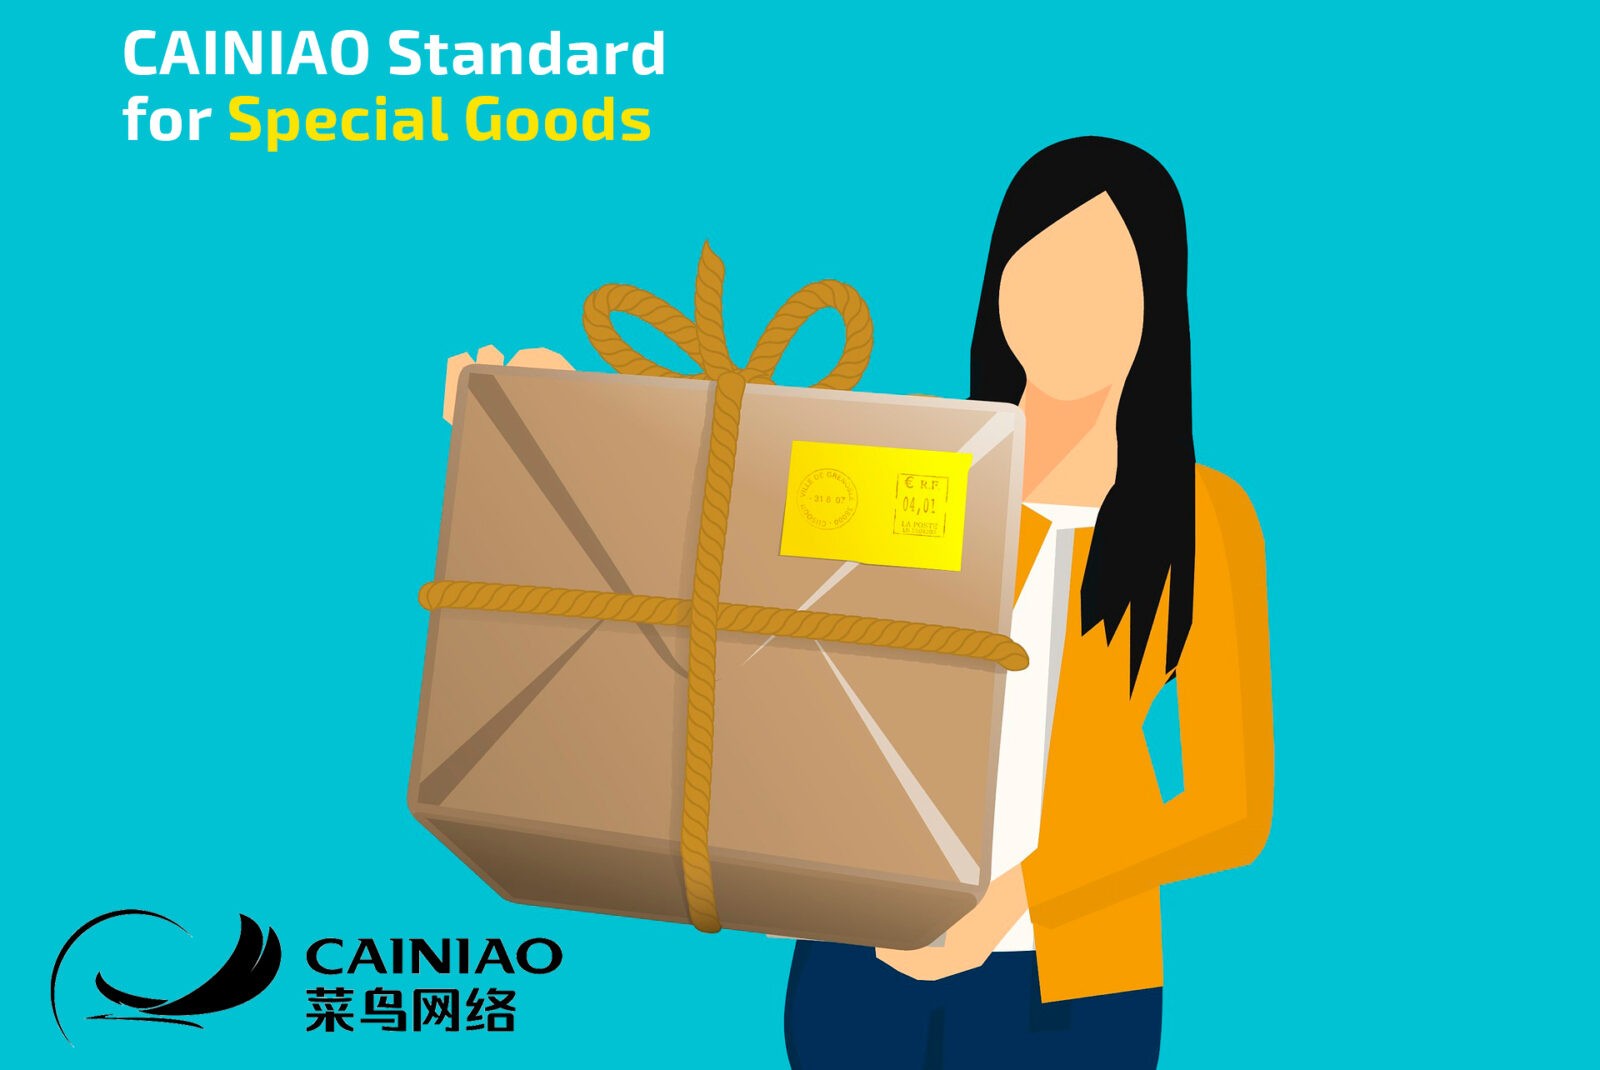 Cainiao Standard for Special Goods